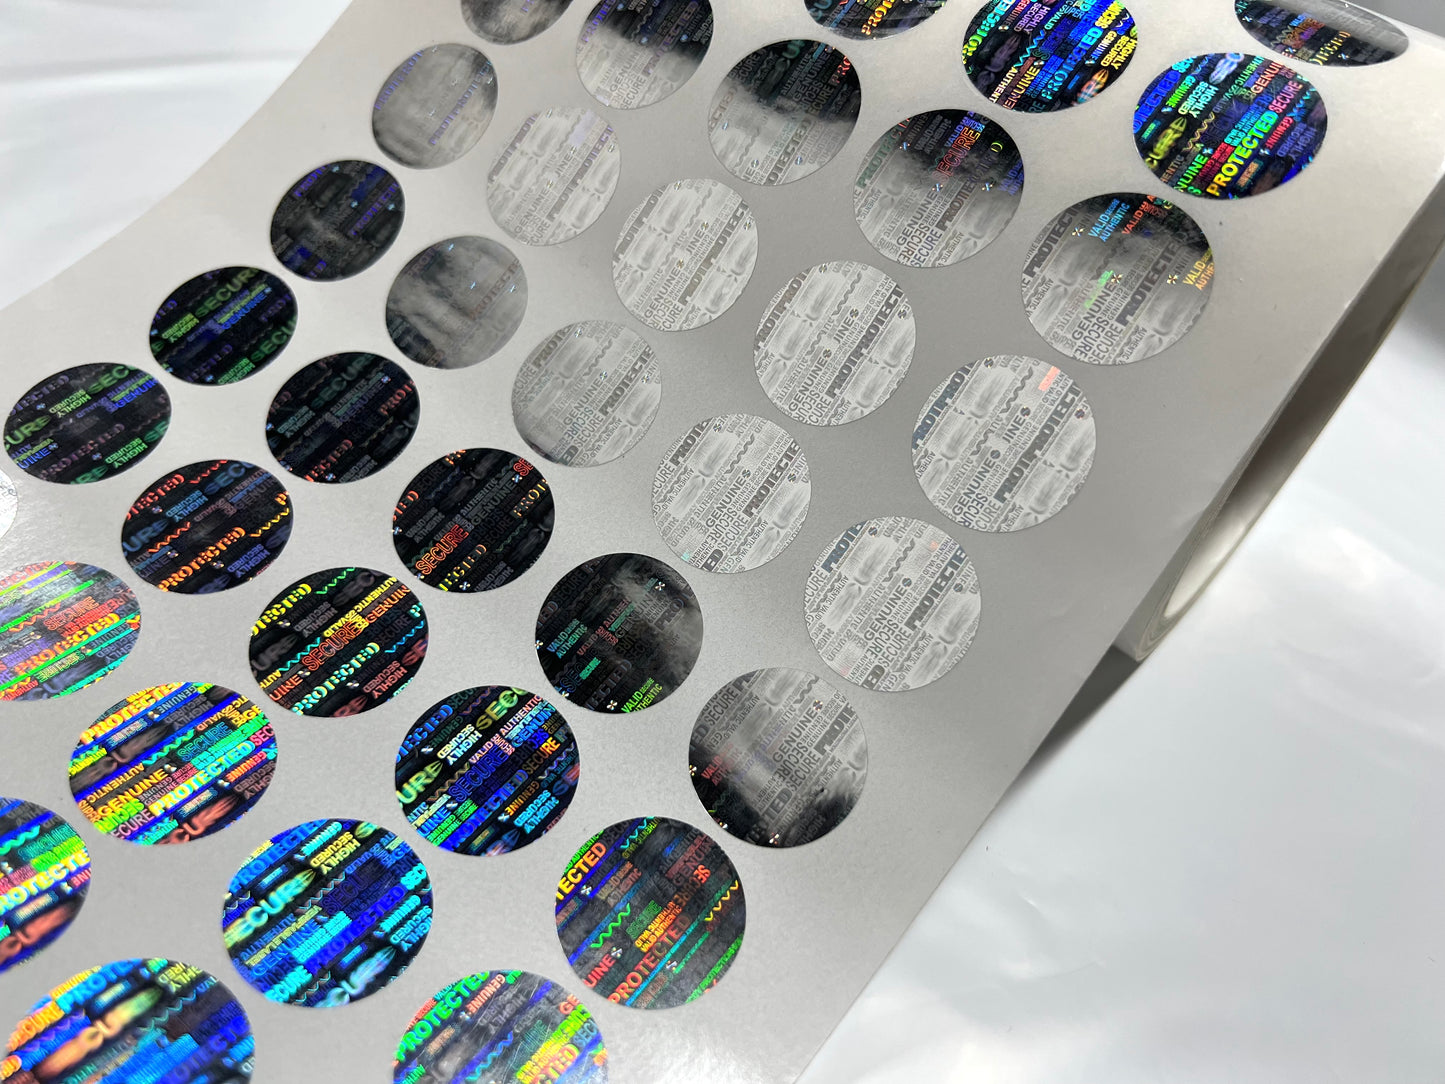 SH1020 Etiqueta adhesiva redonda con holograma de seguridad a prueba de manipulaciones "AUTÉNTICA", etiquetas holográficas a prueba de manipulaciones de garantía